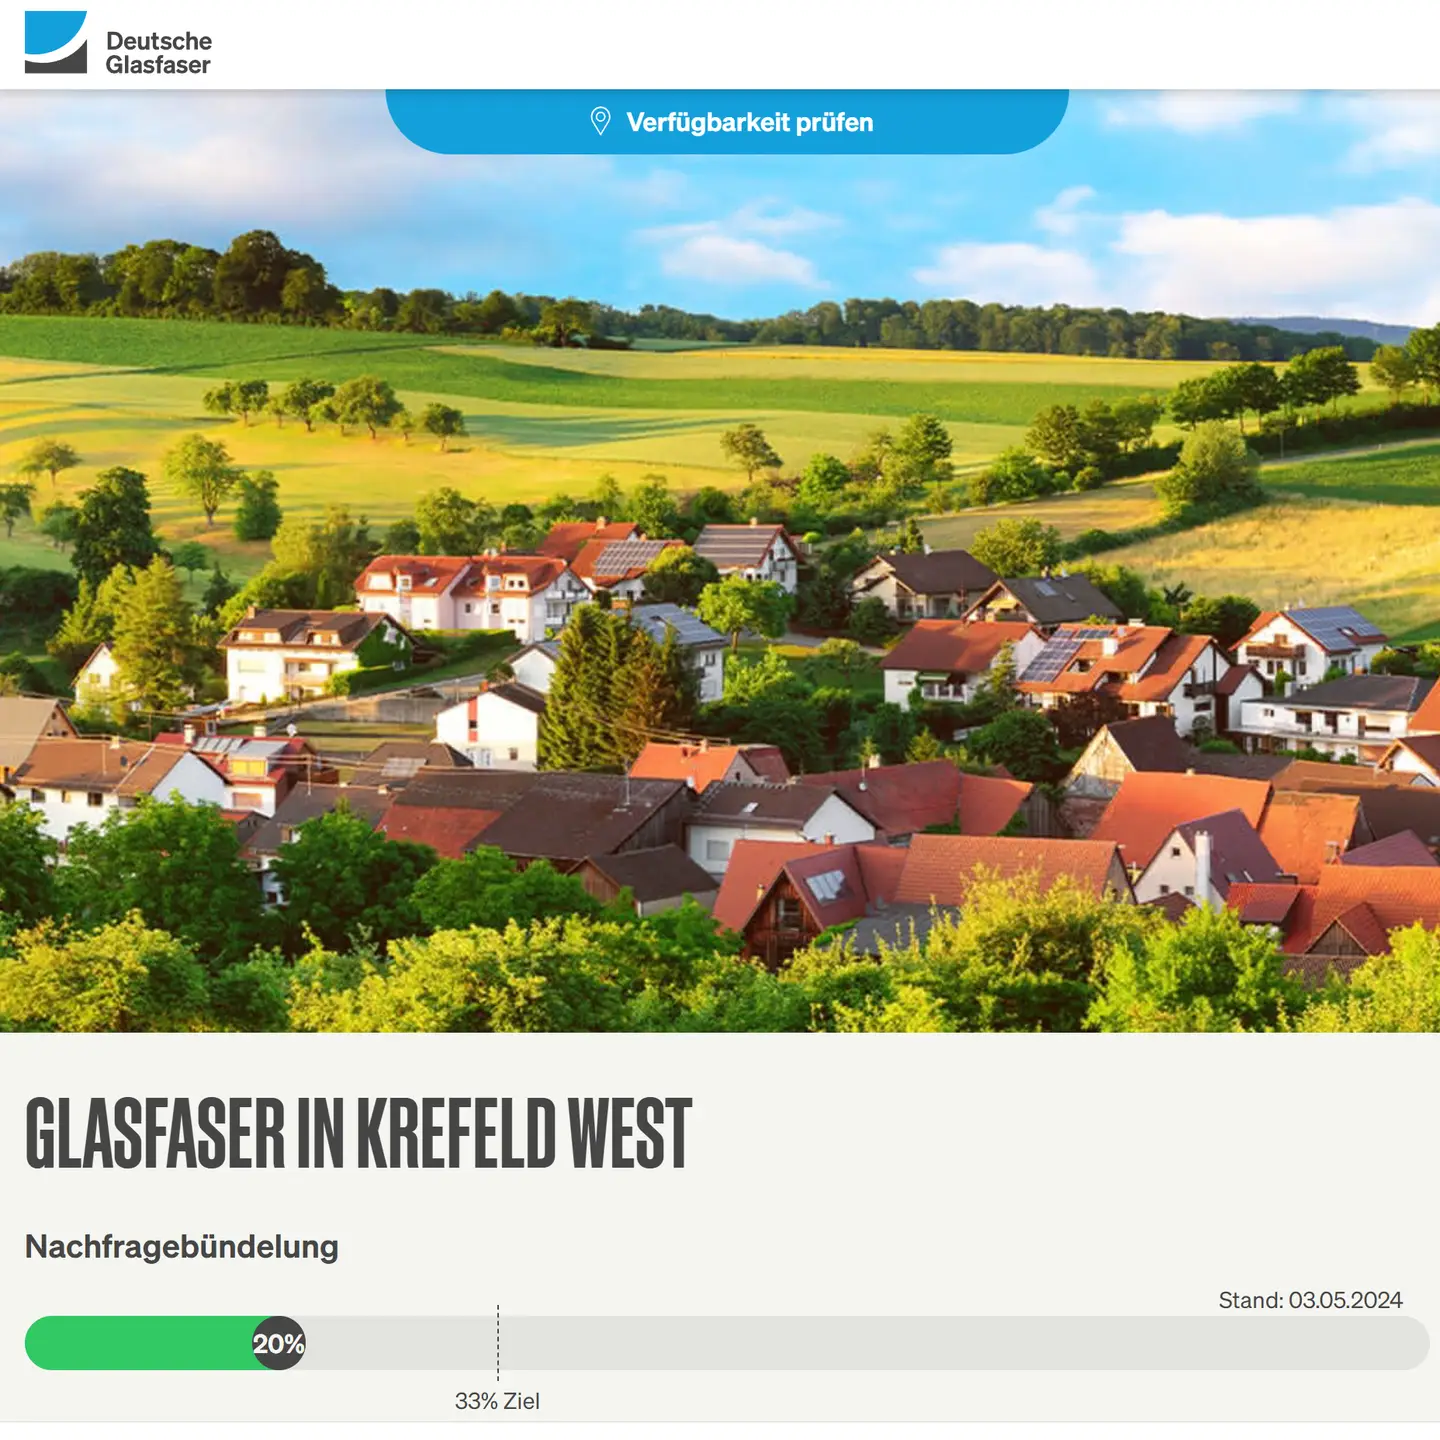 Screenshot von "Deutsche Glasfaser", oben DG Logo, ein Landschaftsbild, Schriftzüge "Glasfaser in Krefeld-West", Nachfragebündelung bis 18.5.2024, Anzeige des aktuellen Stand: Es fehlen noch 160 Anträge 